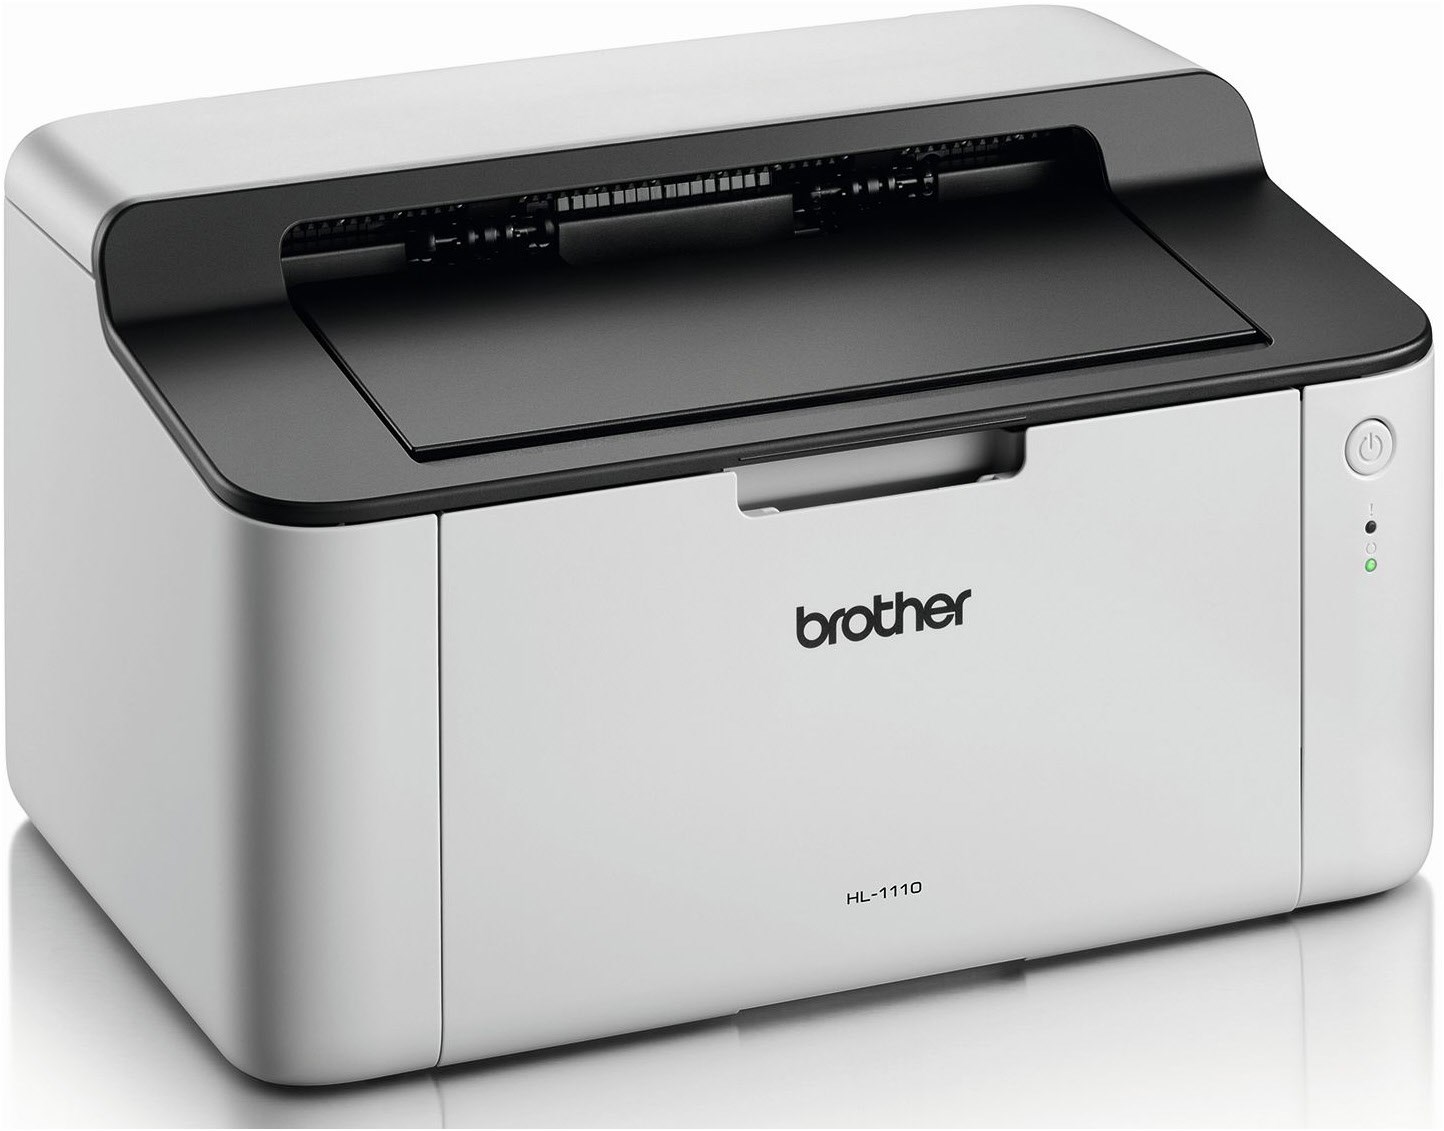 Brother HL-1110 s/w Laserdrucker schwarz